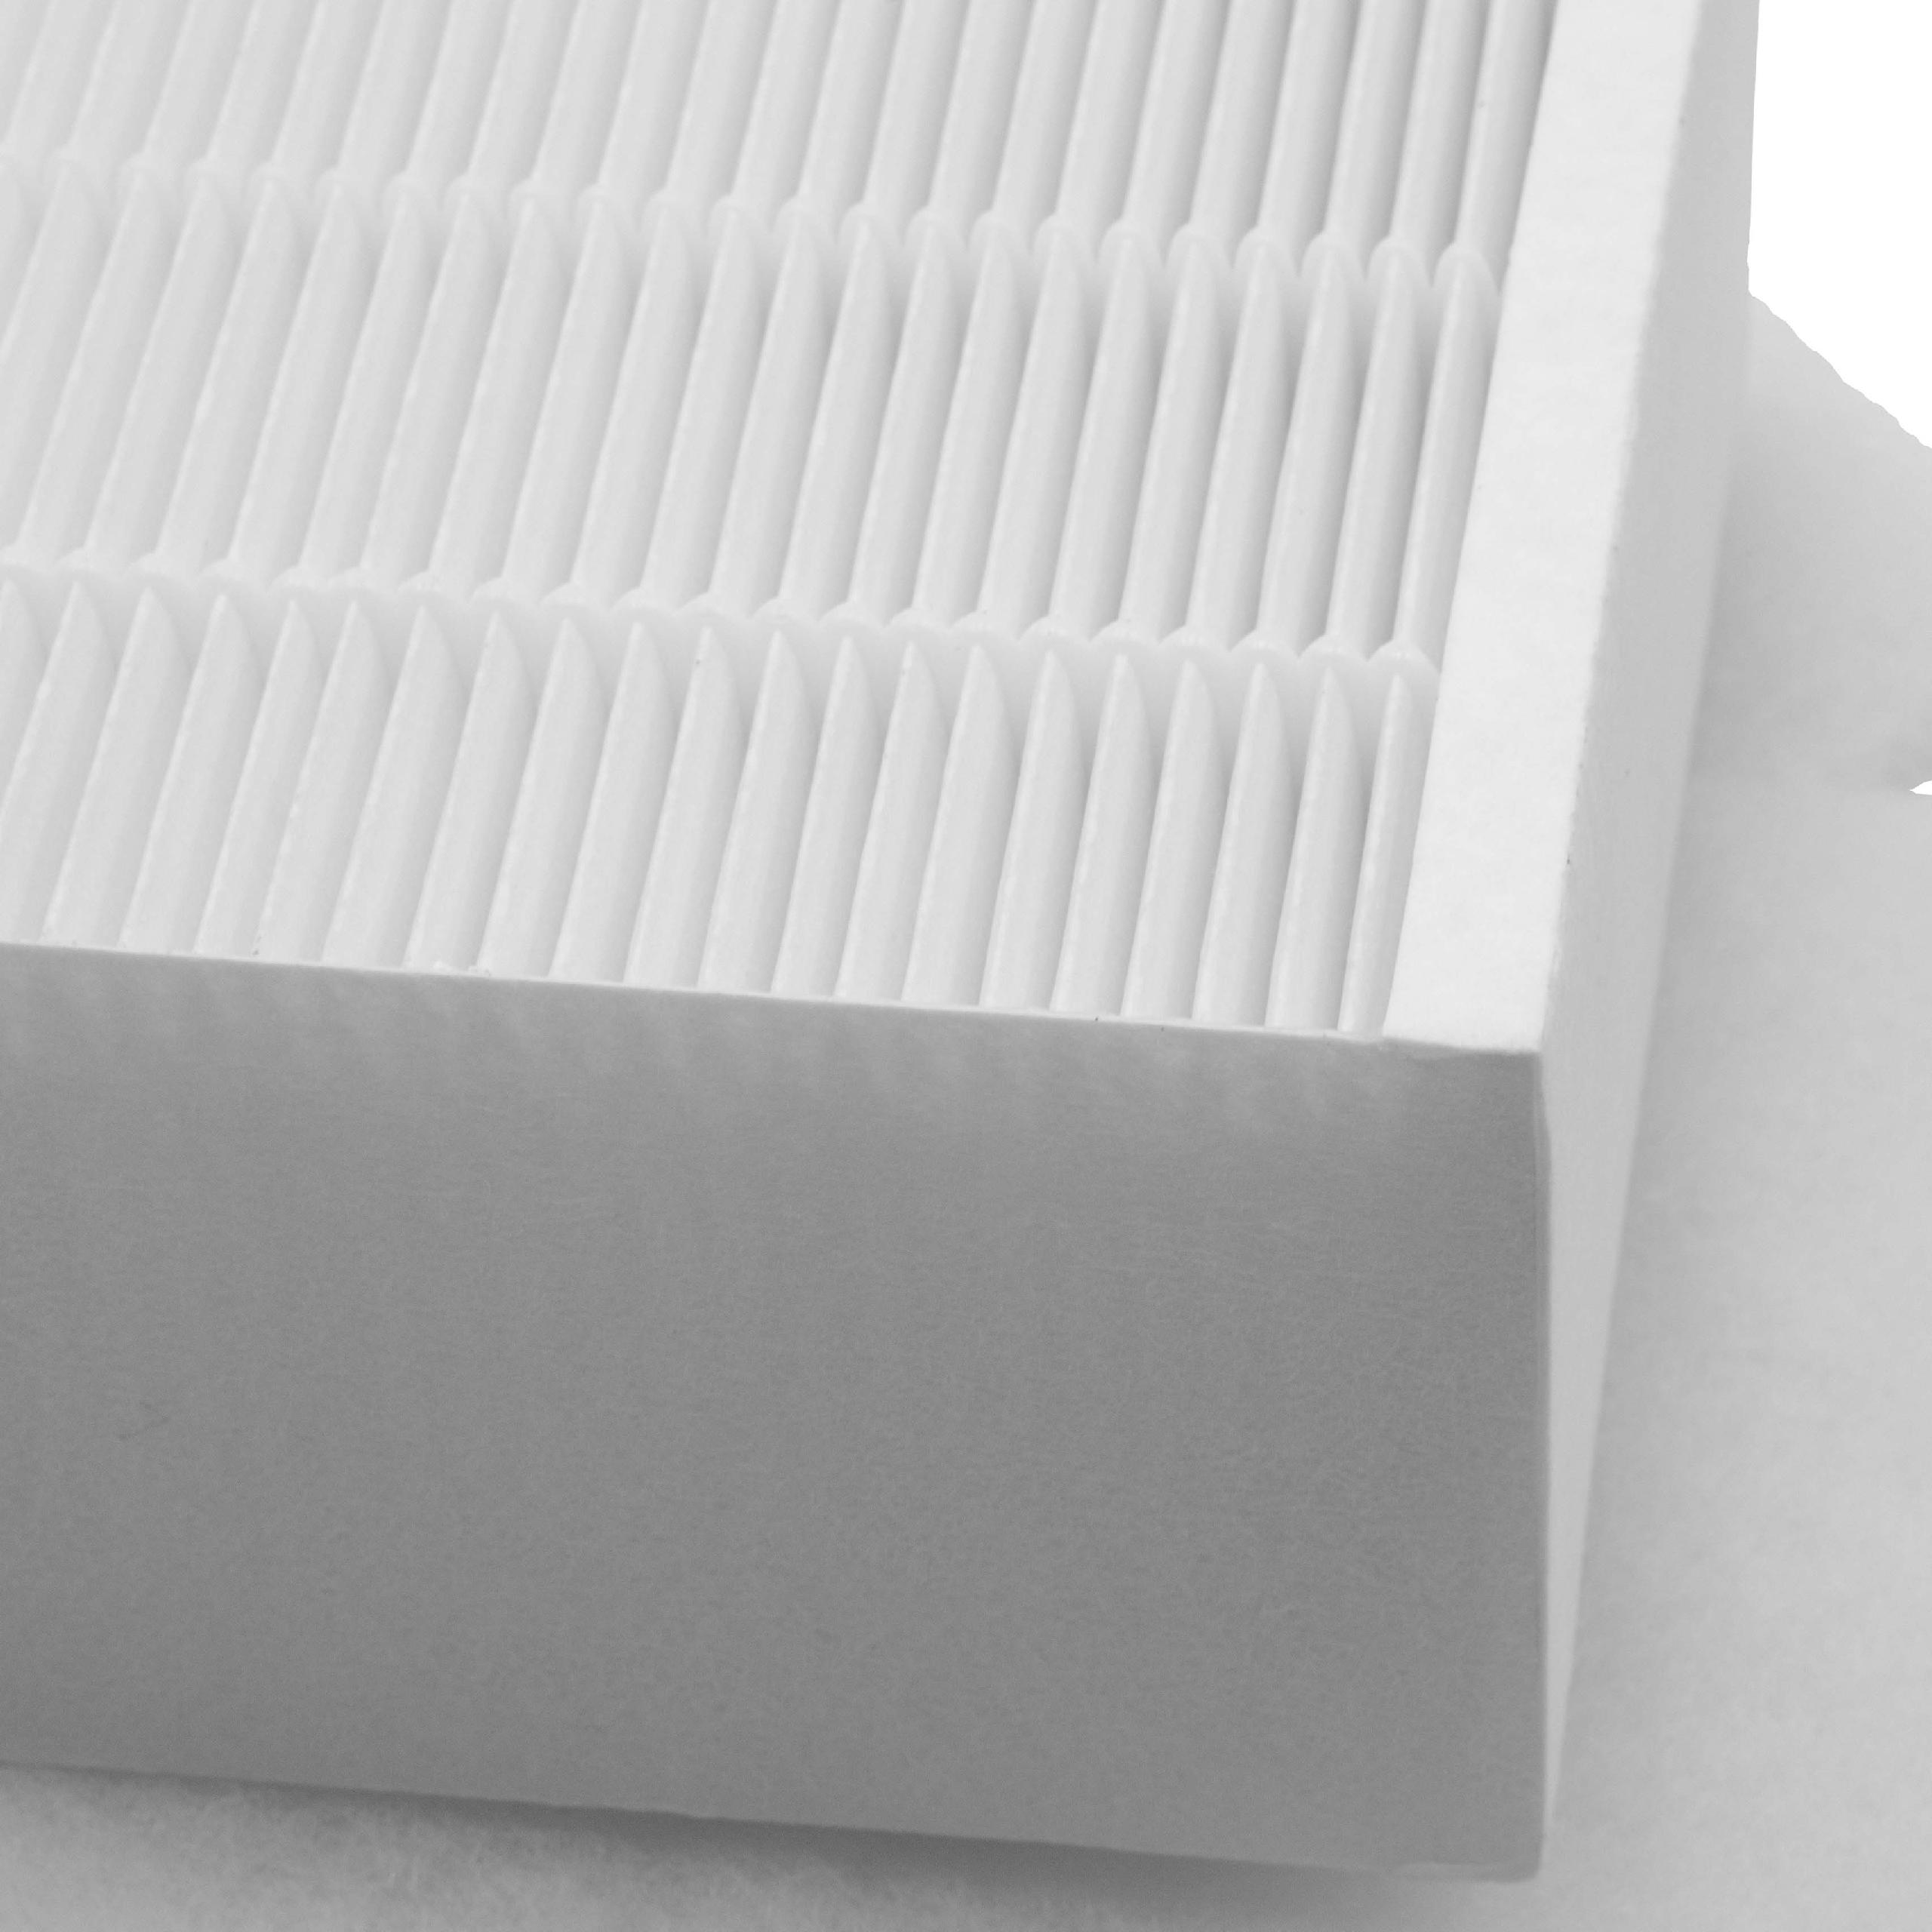 Set de filtros de 3 uds. reemplaza Vallox 27, 2505ventilación - filtro de polvo fino, filtro de polvo grueso